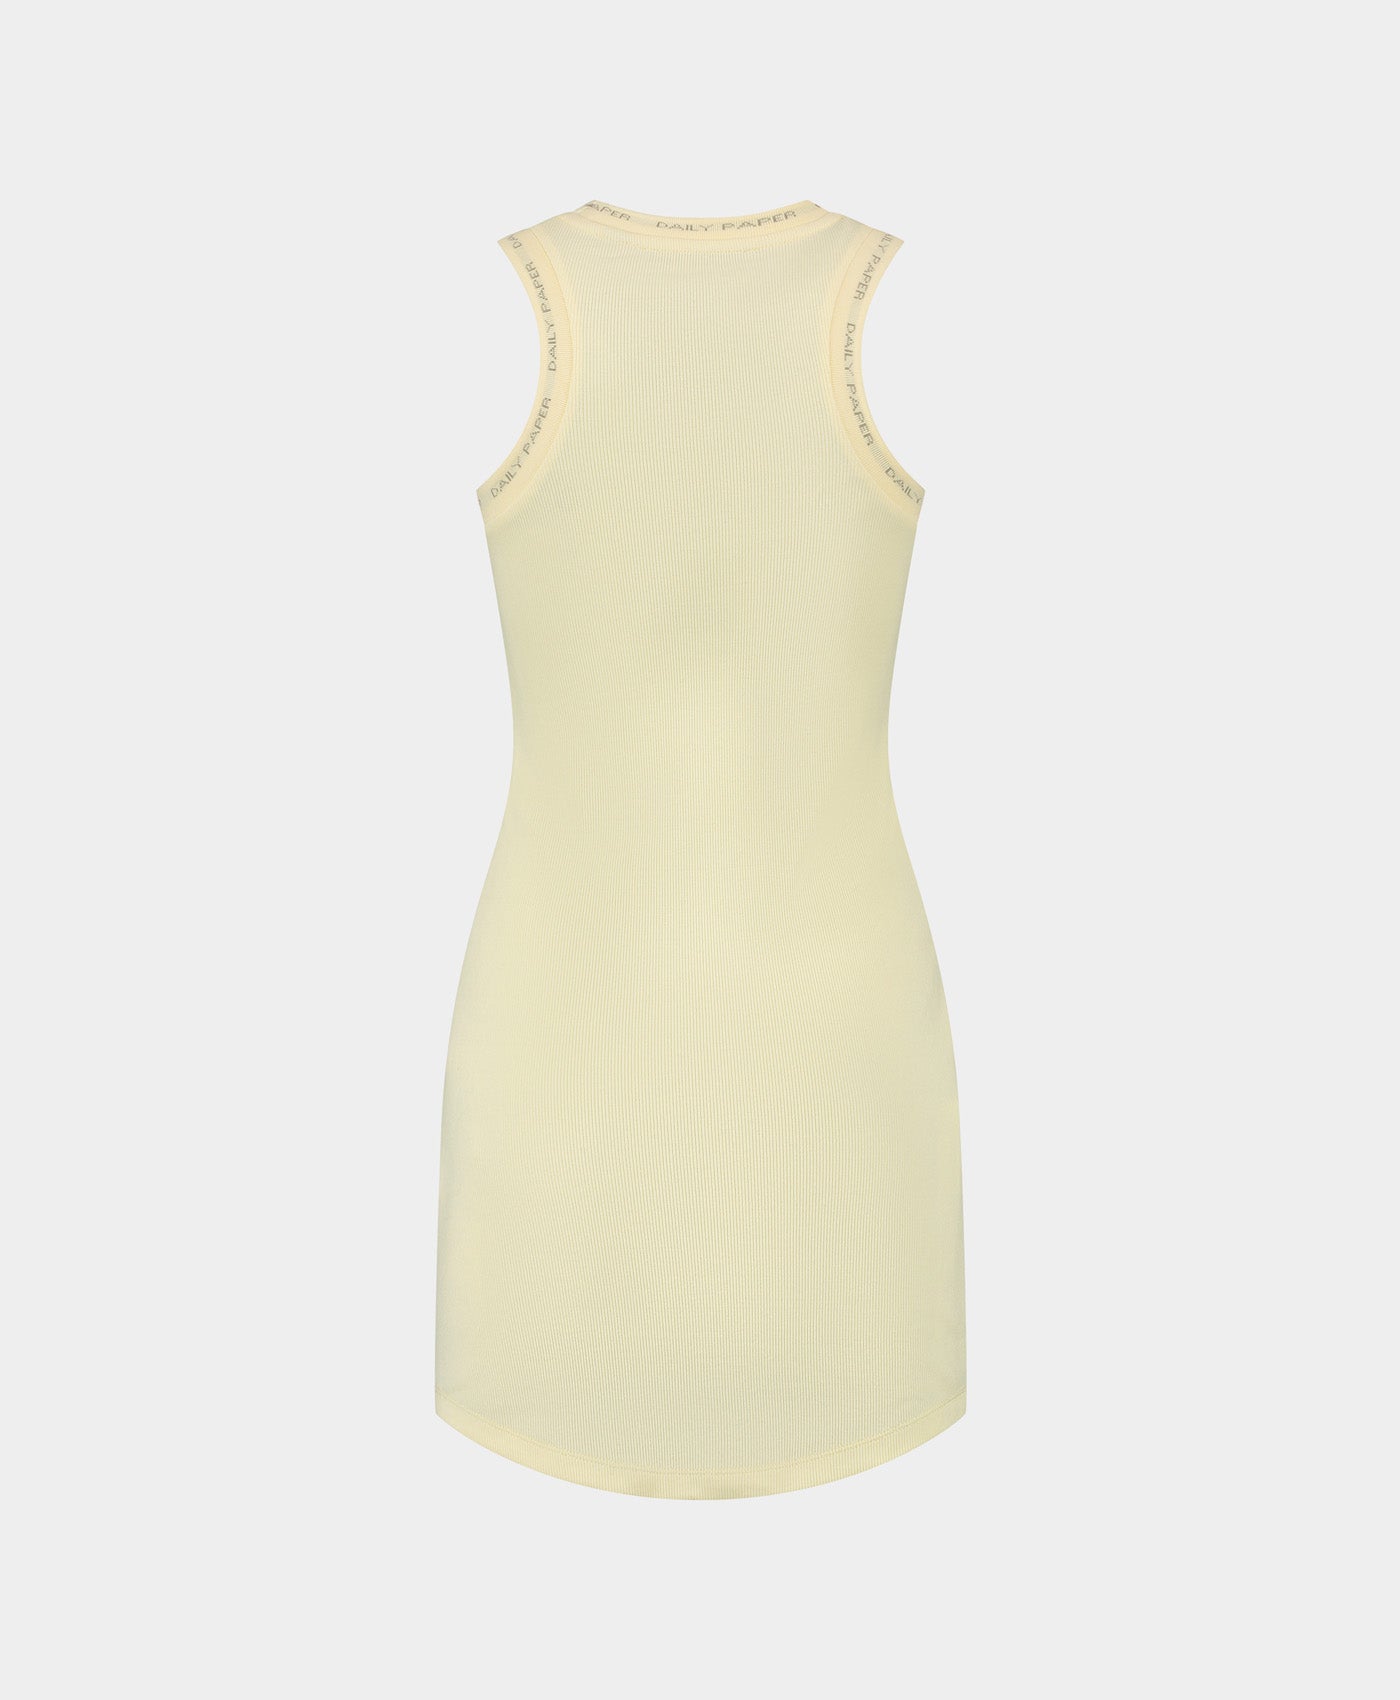 DP - Icing Yellow Erib Tank Dress - Packshot - Rear